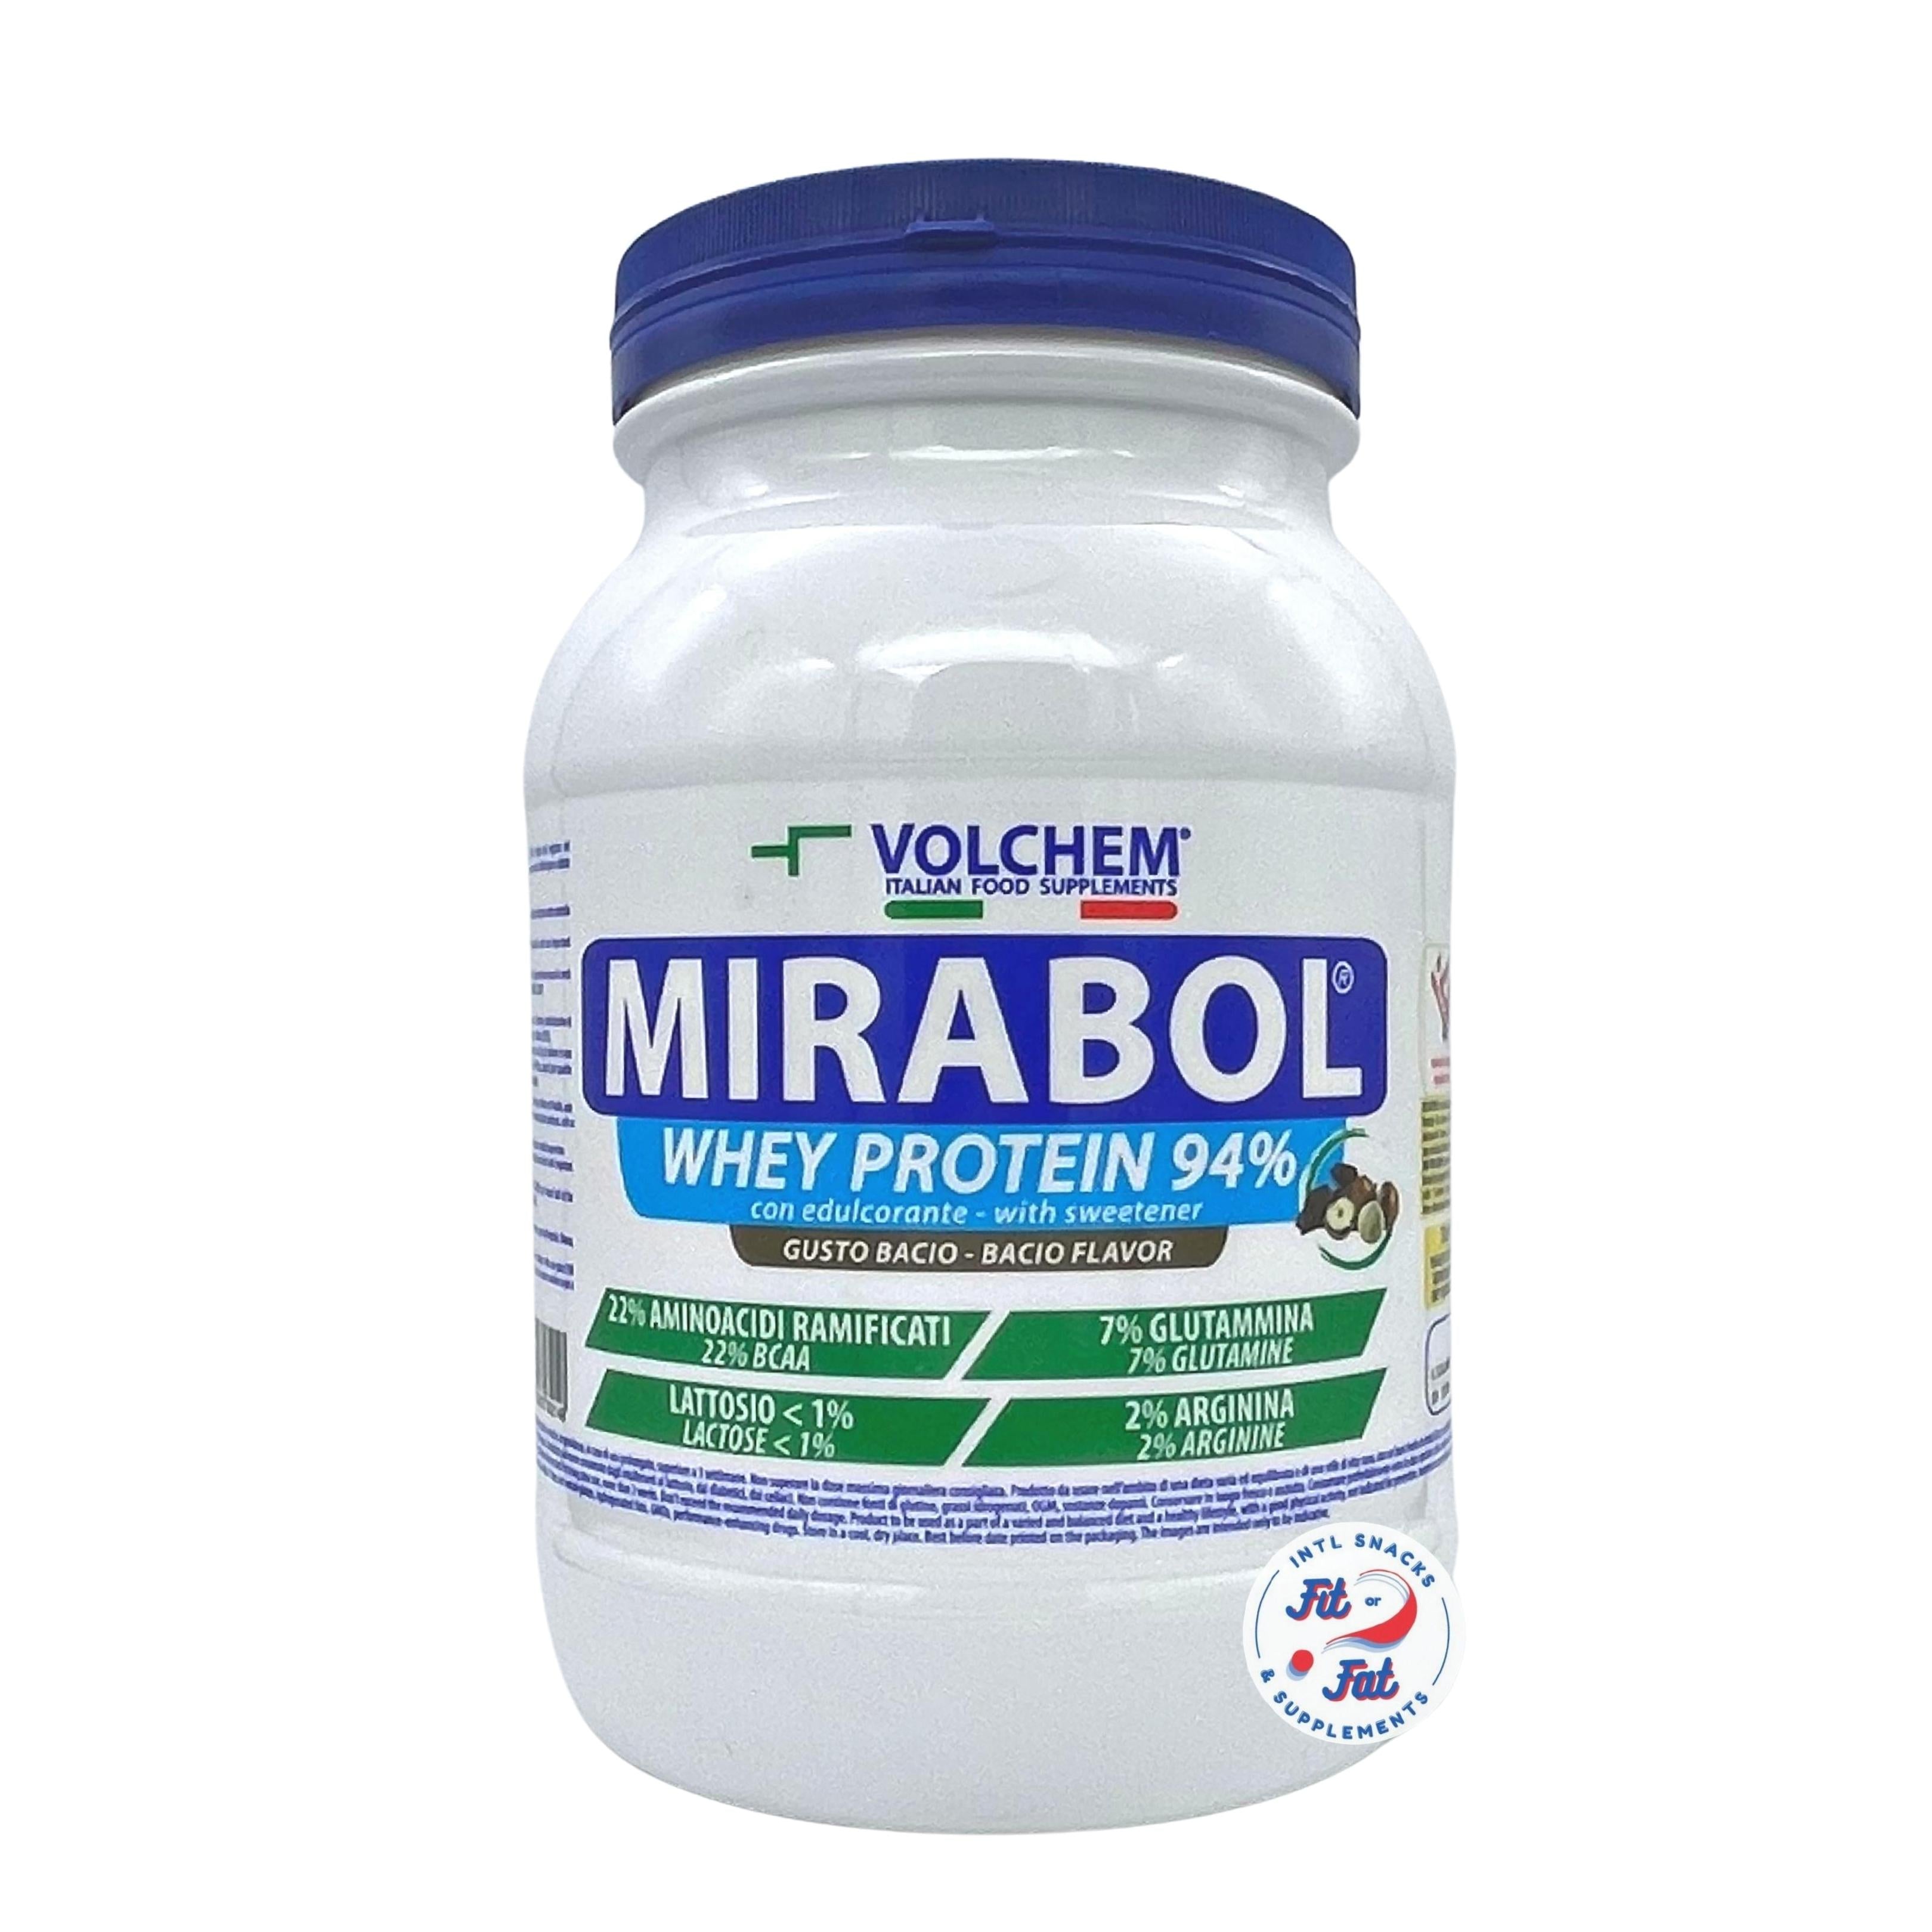 Volchem - Mirabol Whey Protein 94% 750g Bacio